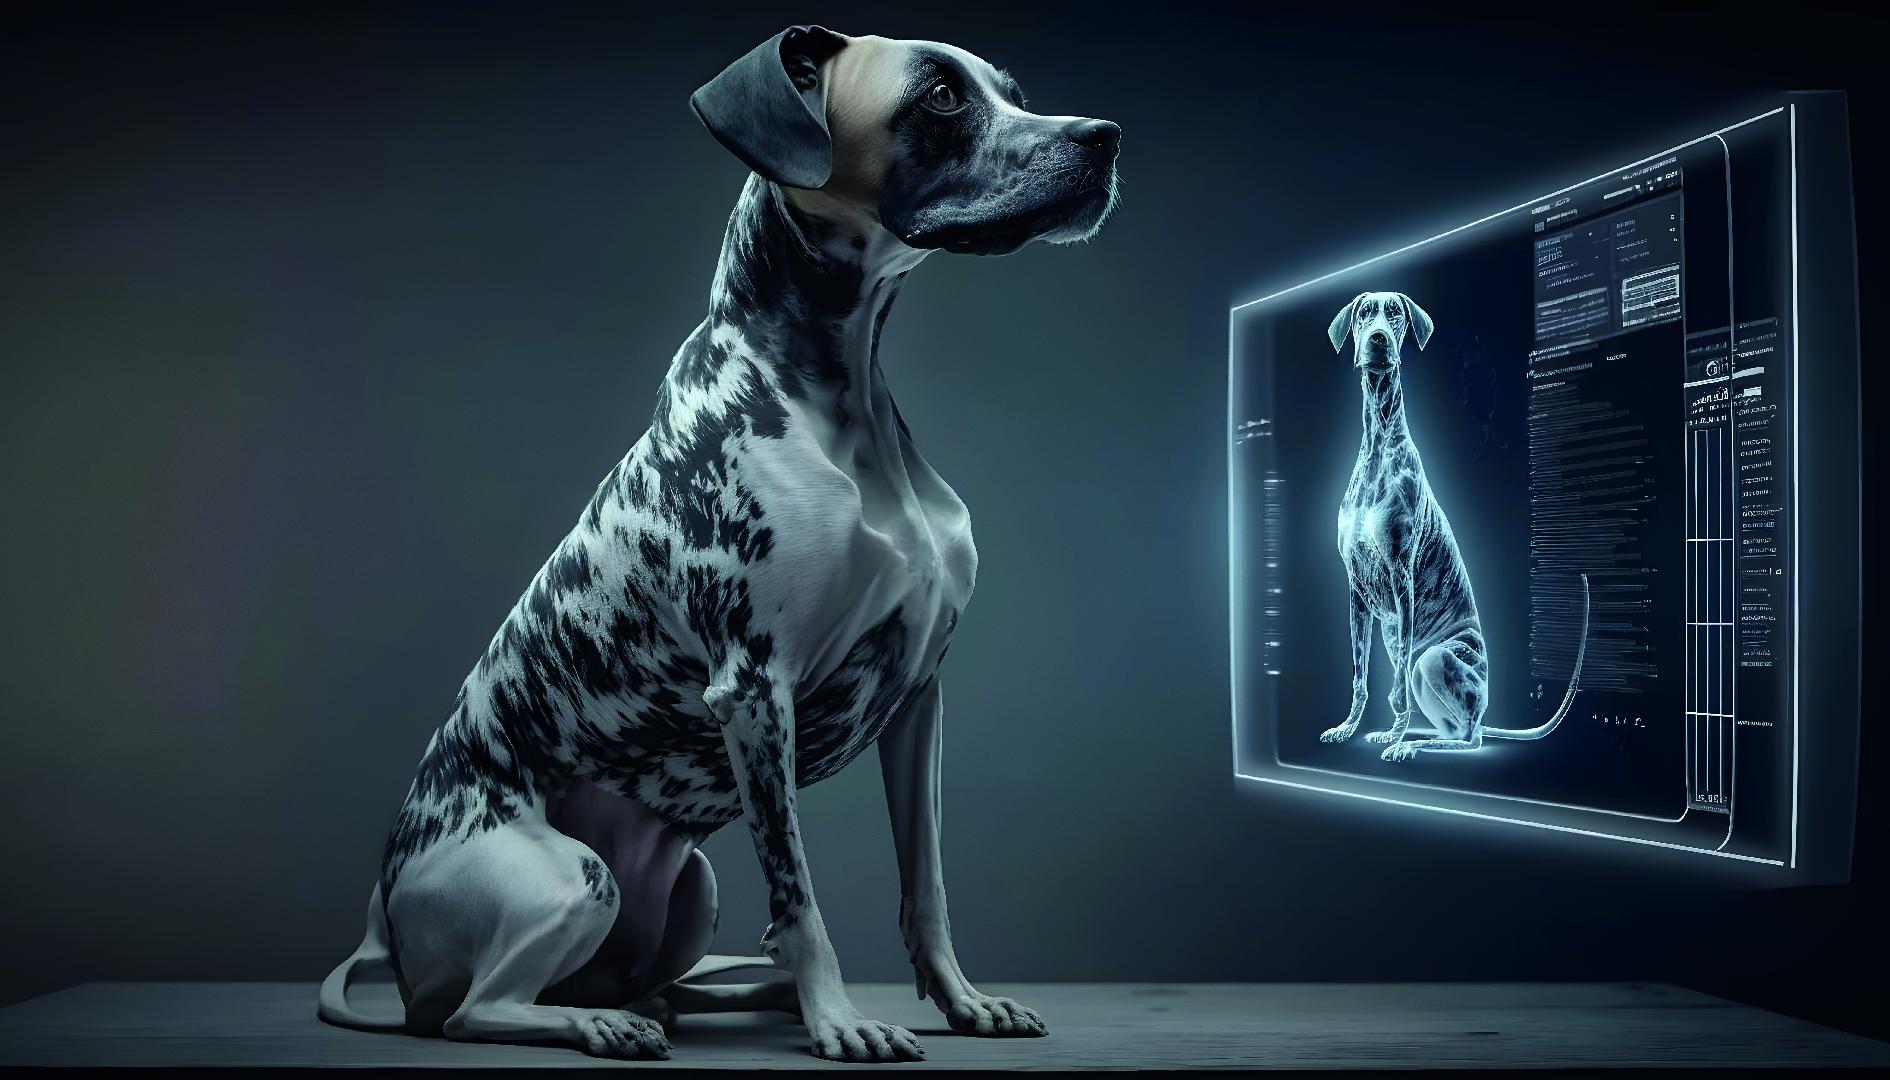 PET-TECH: tecnología de punta para la industria de las mascotas de la mano de startups